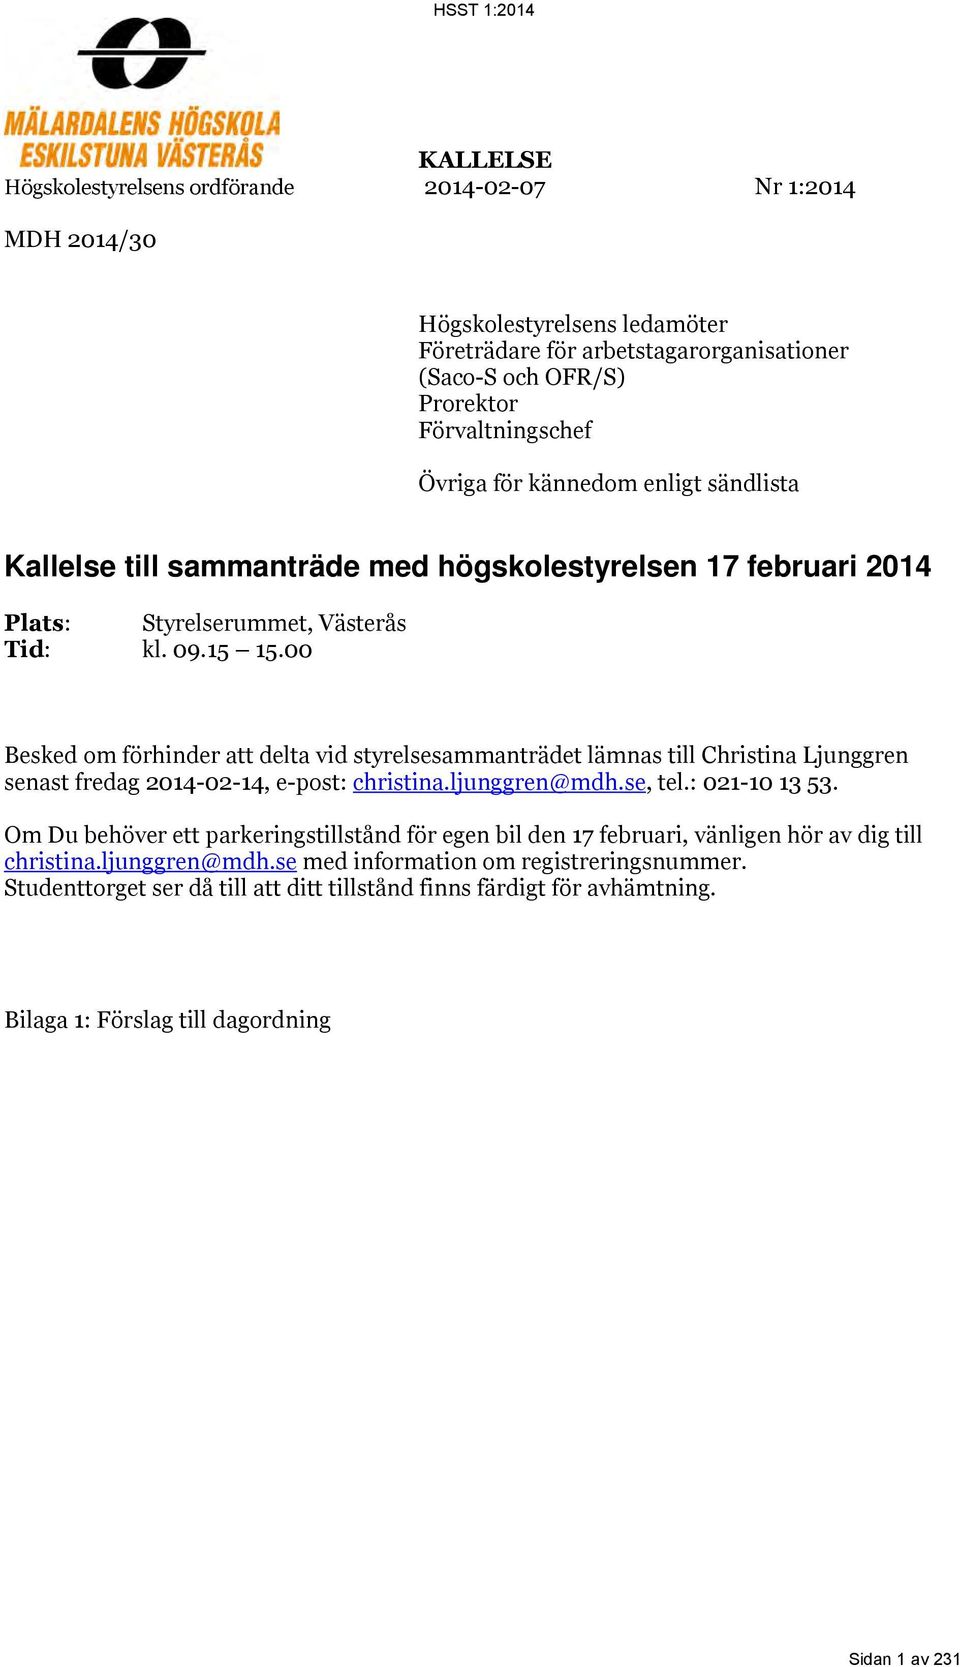 00 Besked om förhinder att delta vid styrelsesammanträdet lämnas till Christina Ljunggren senast fredag 2014-02-14, e-post: christina.ljunggren@mdh.se, tel.: 021-10 13 53.